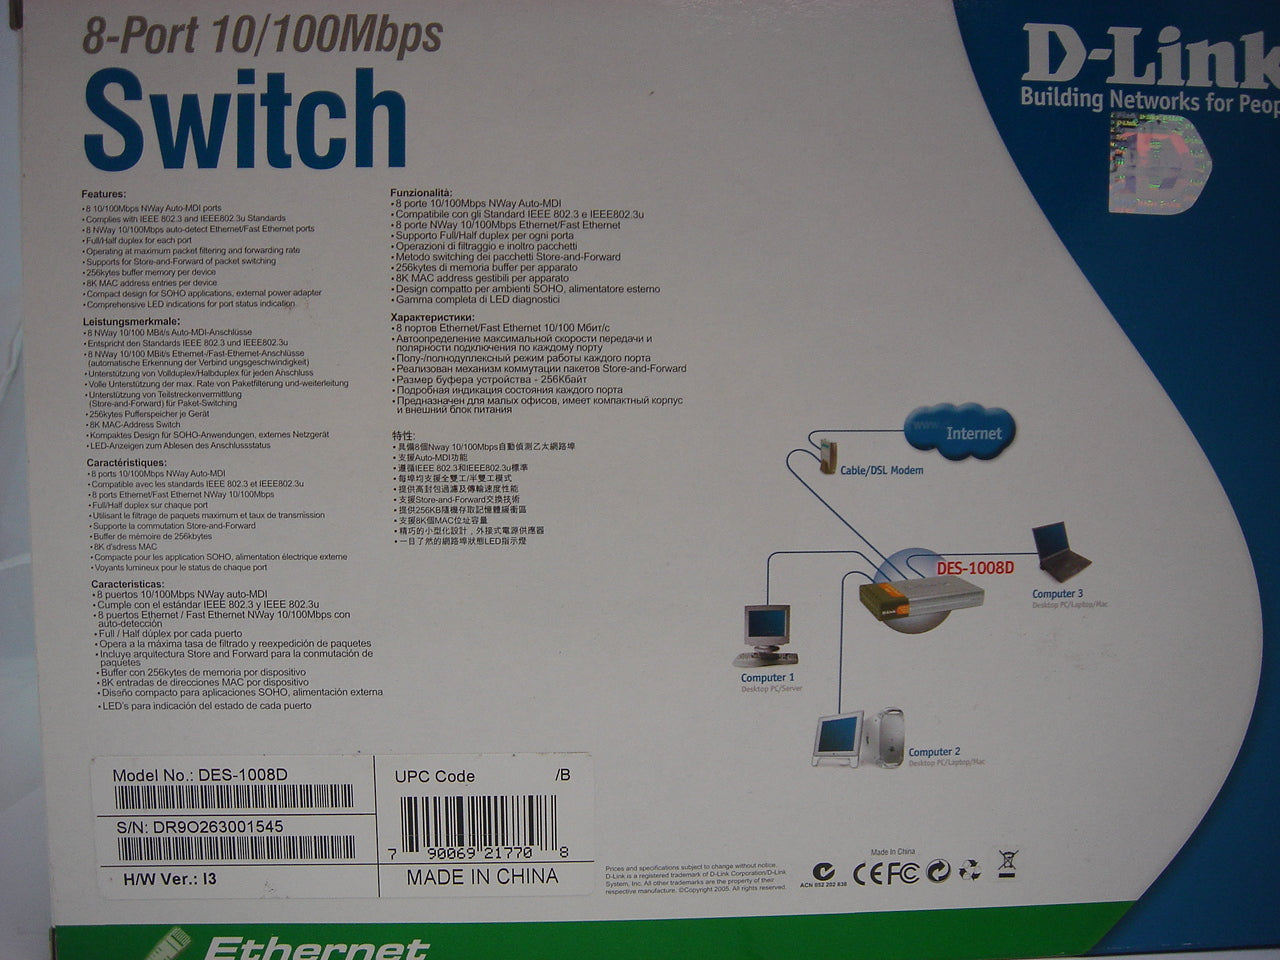 PR02729_DES-1008D_8 Port 10/100 Switch - Image5